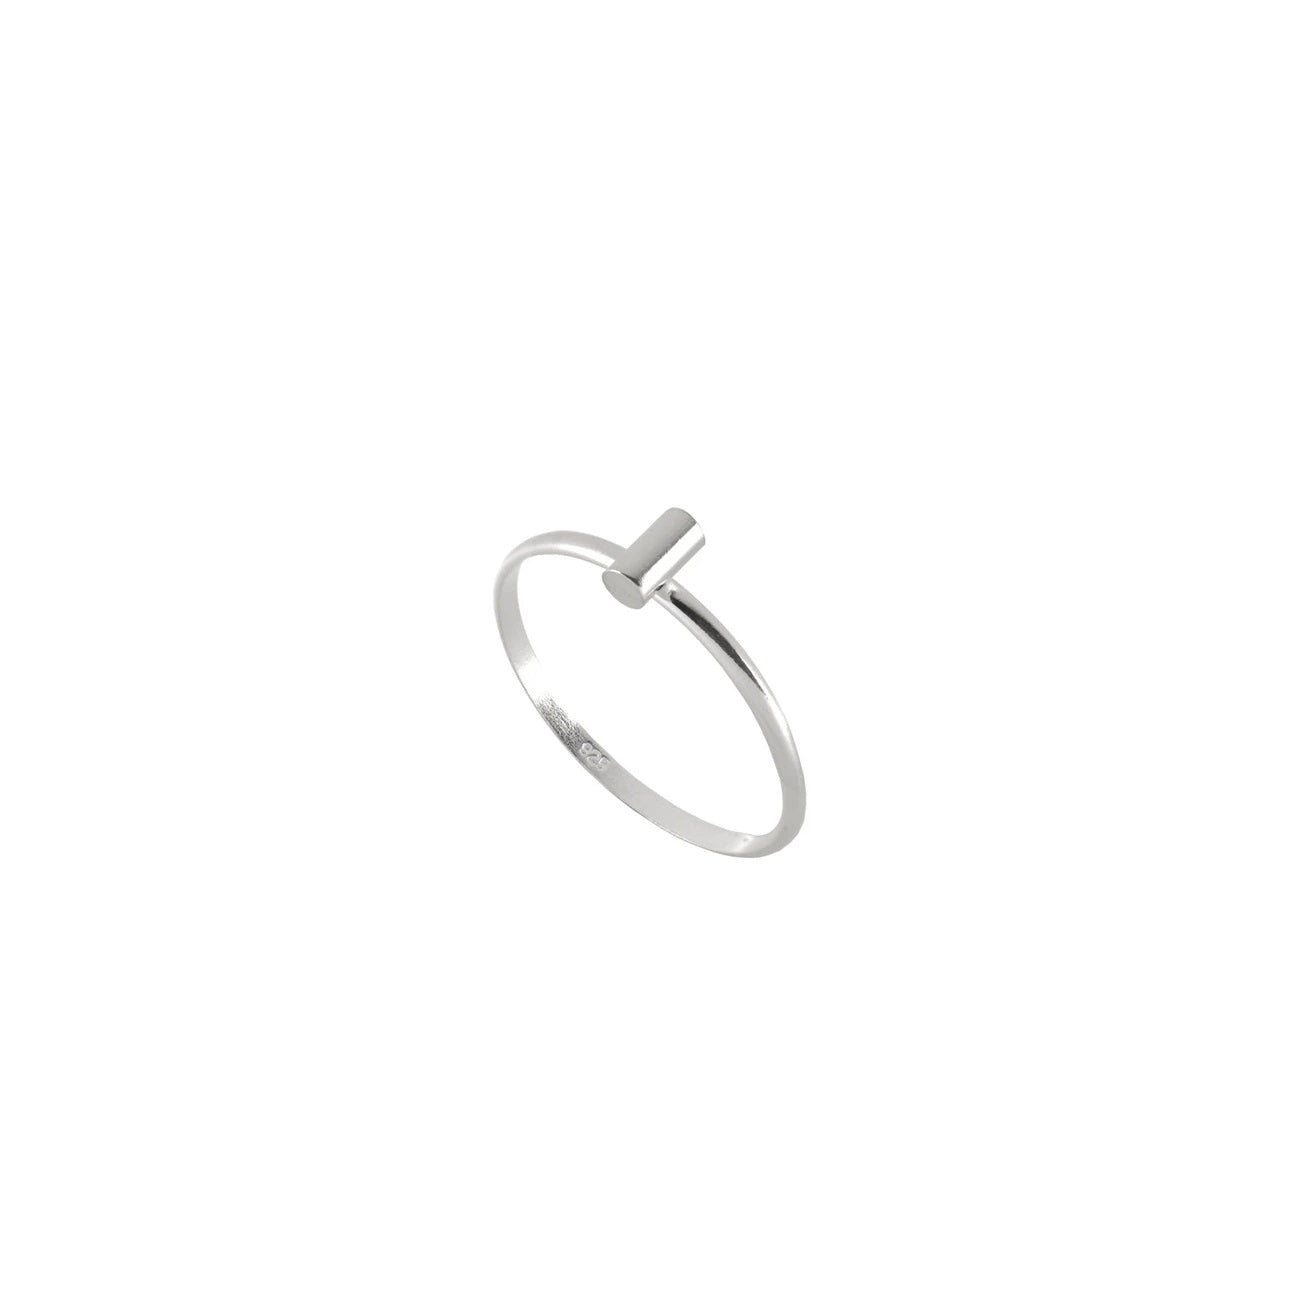 Tiny Rod Ring